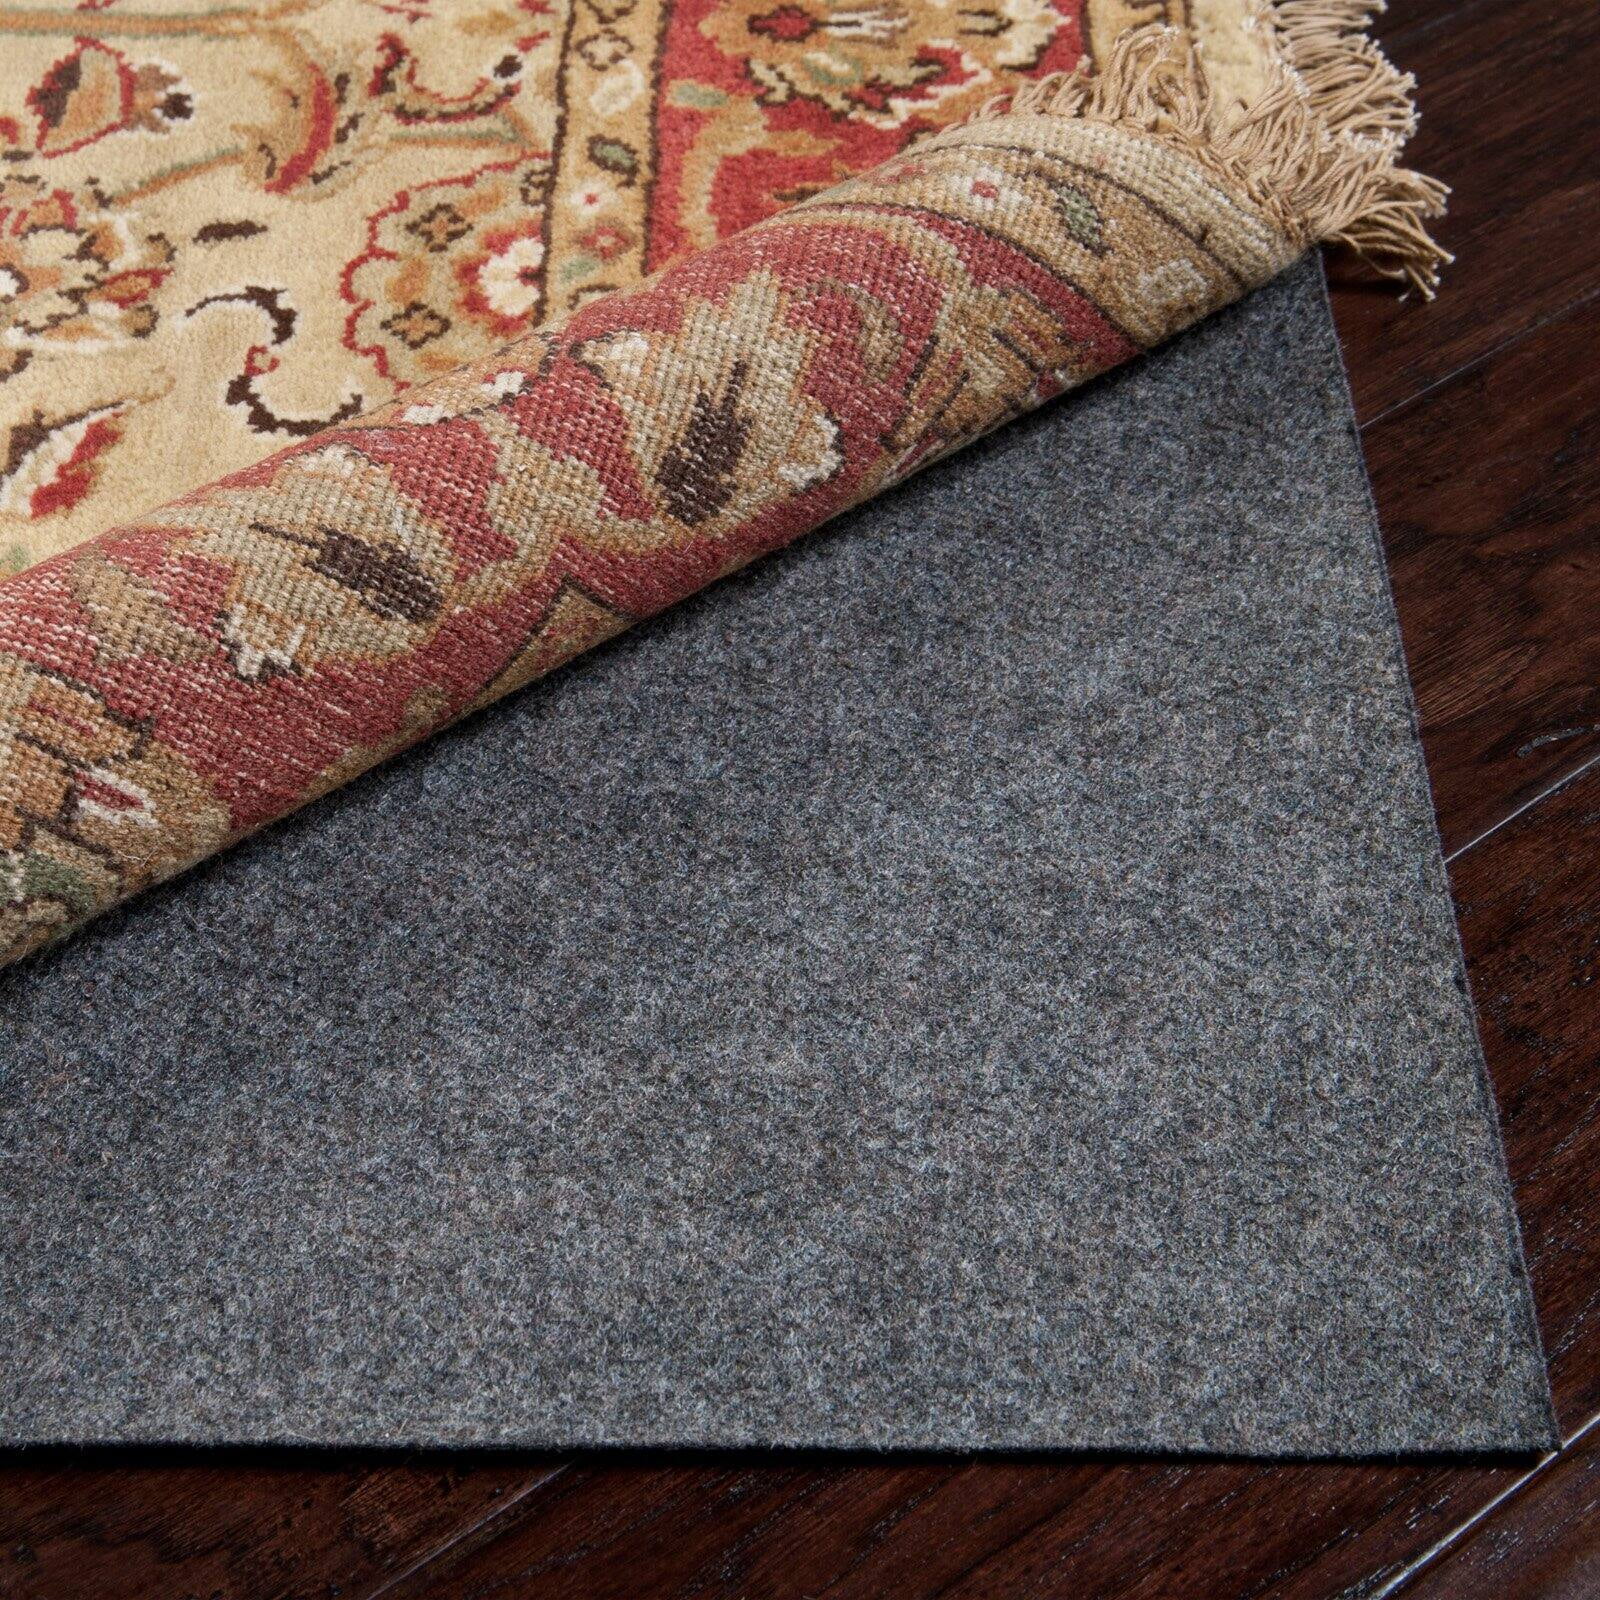 Non Slip Floor Carpet,Teen's Carpet, SUPREME Patterned 13 Carpet